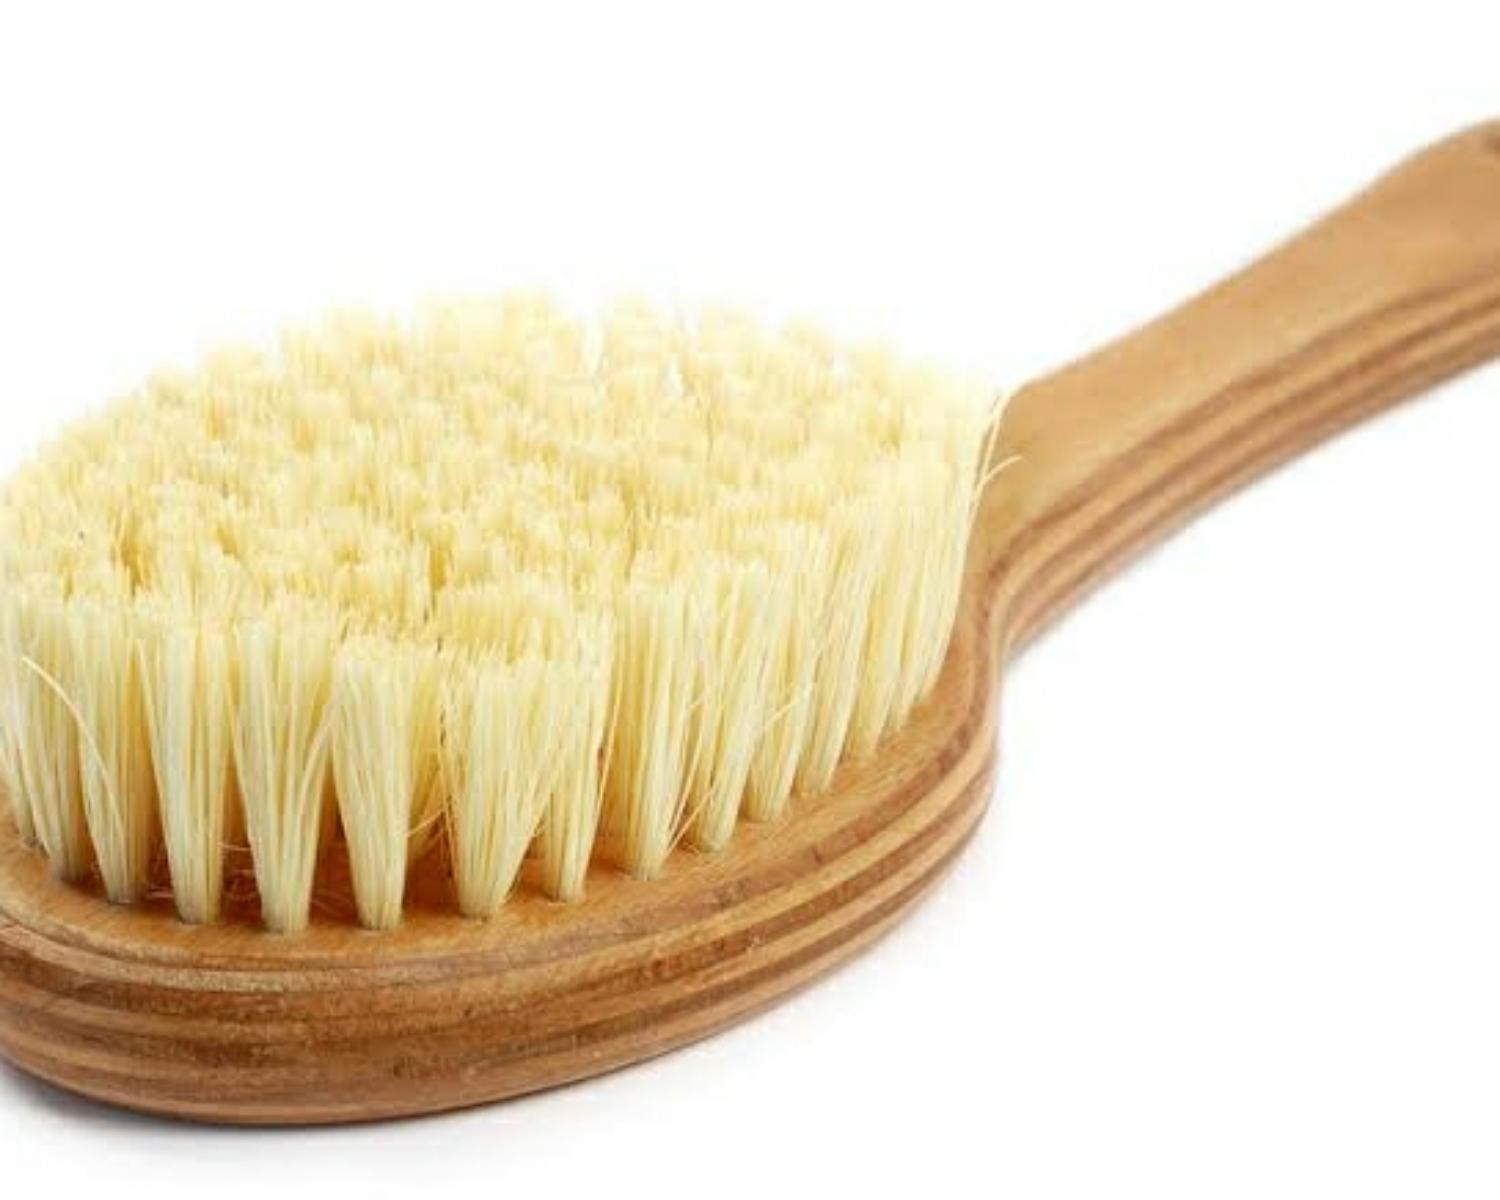 6. Dry skin brushing 